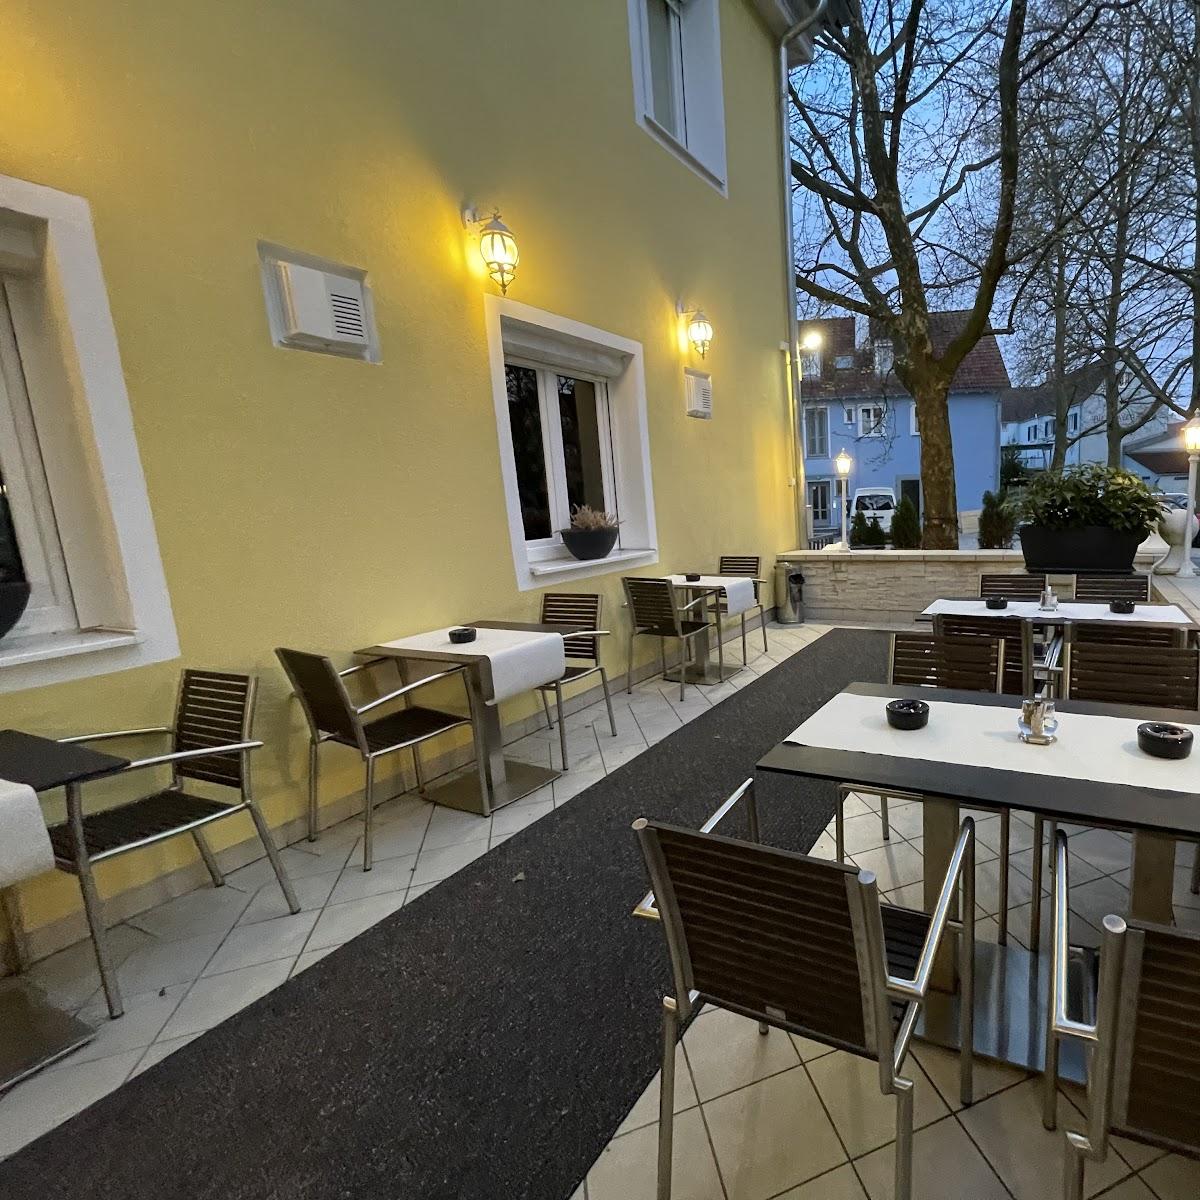 Restaurant "Restaurant Cavos" in Weingarten